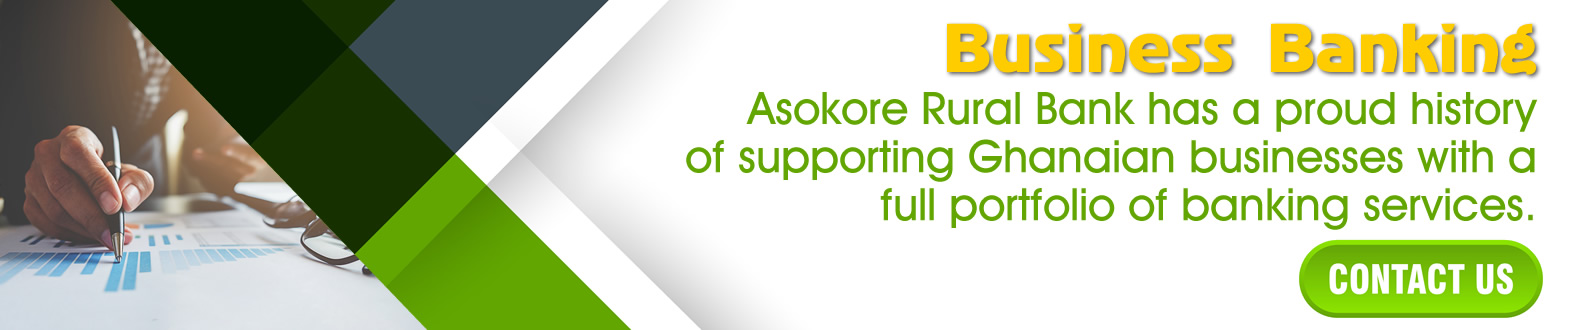 asokorebank_home_business_banner.jpg